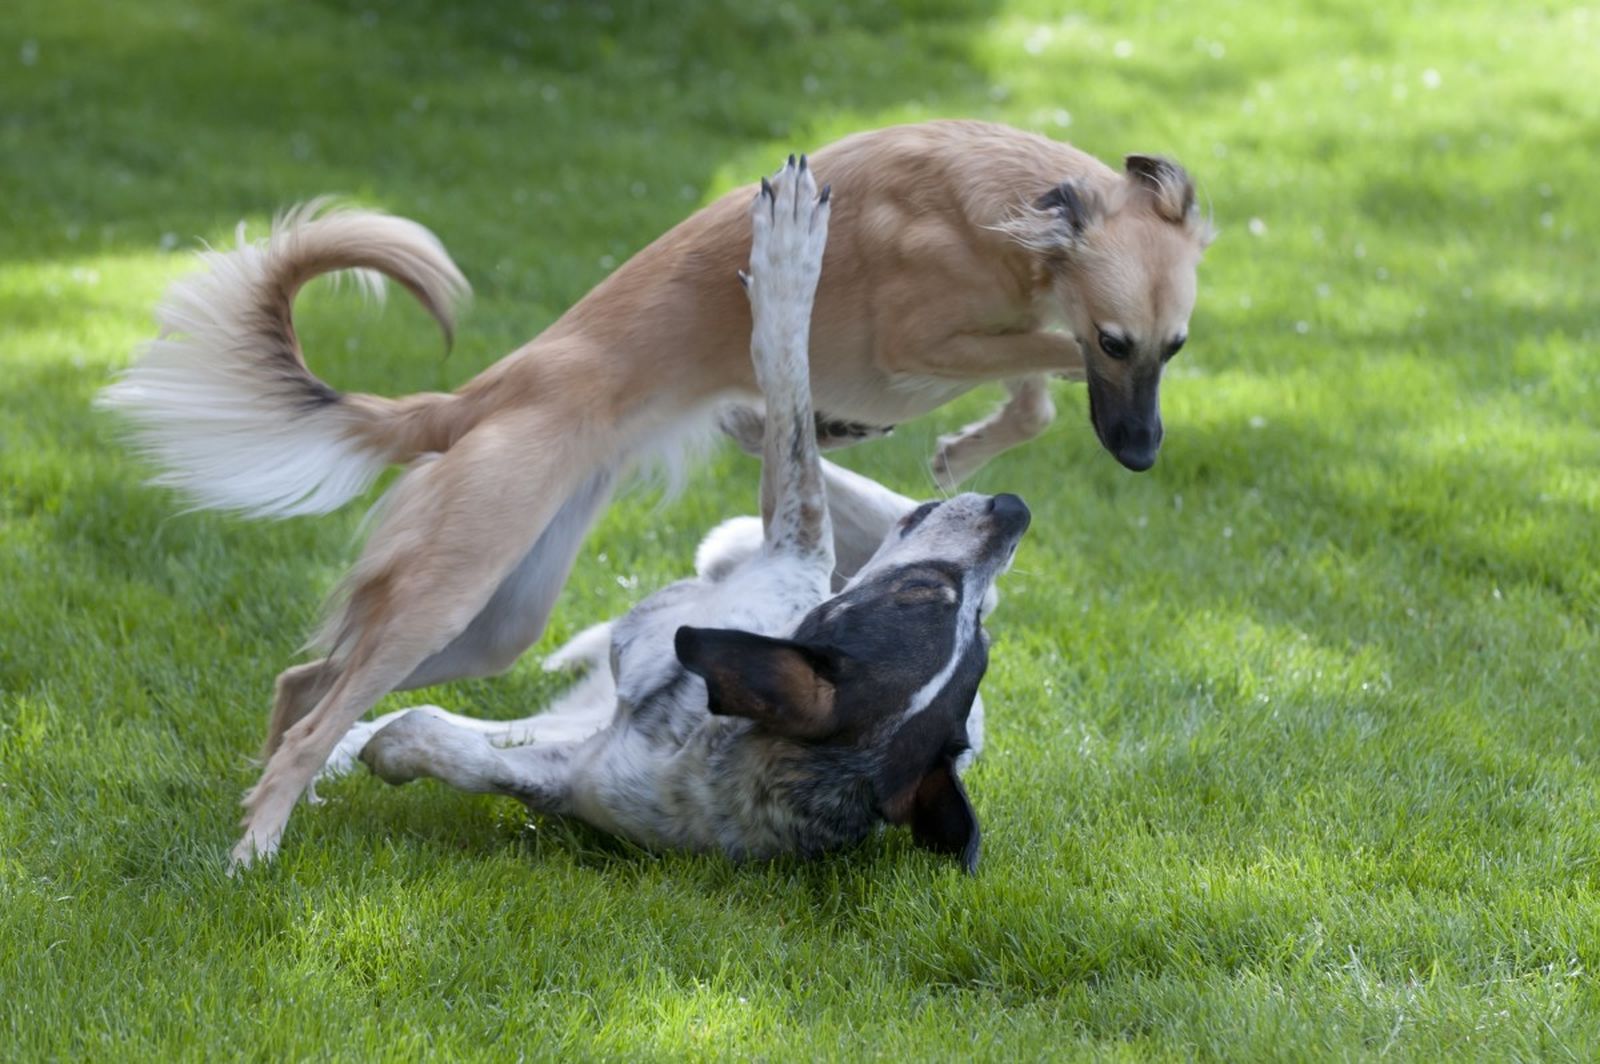 Ein langhaariger Windhund springt über einen anderen auf dem Boden liegenden Hund beim Spielen auf der Wiese